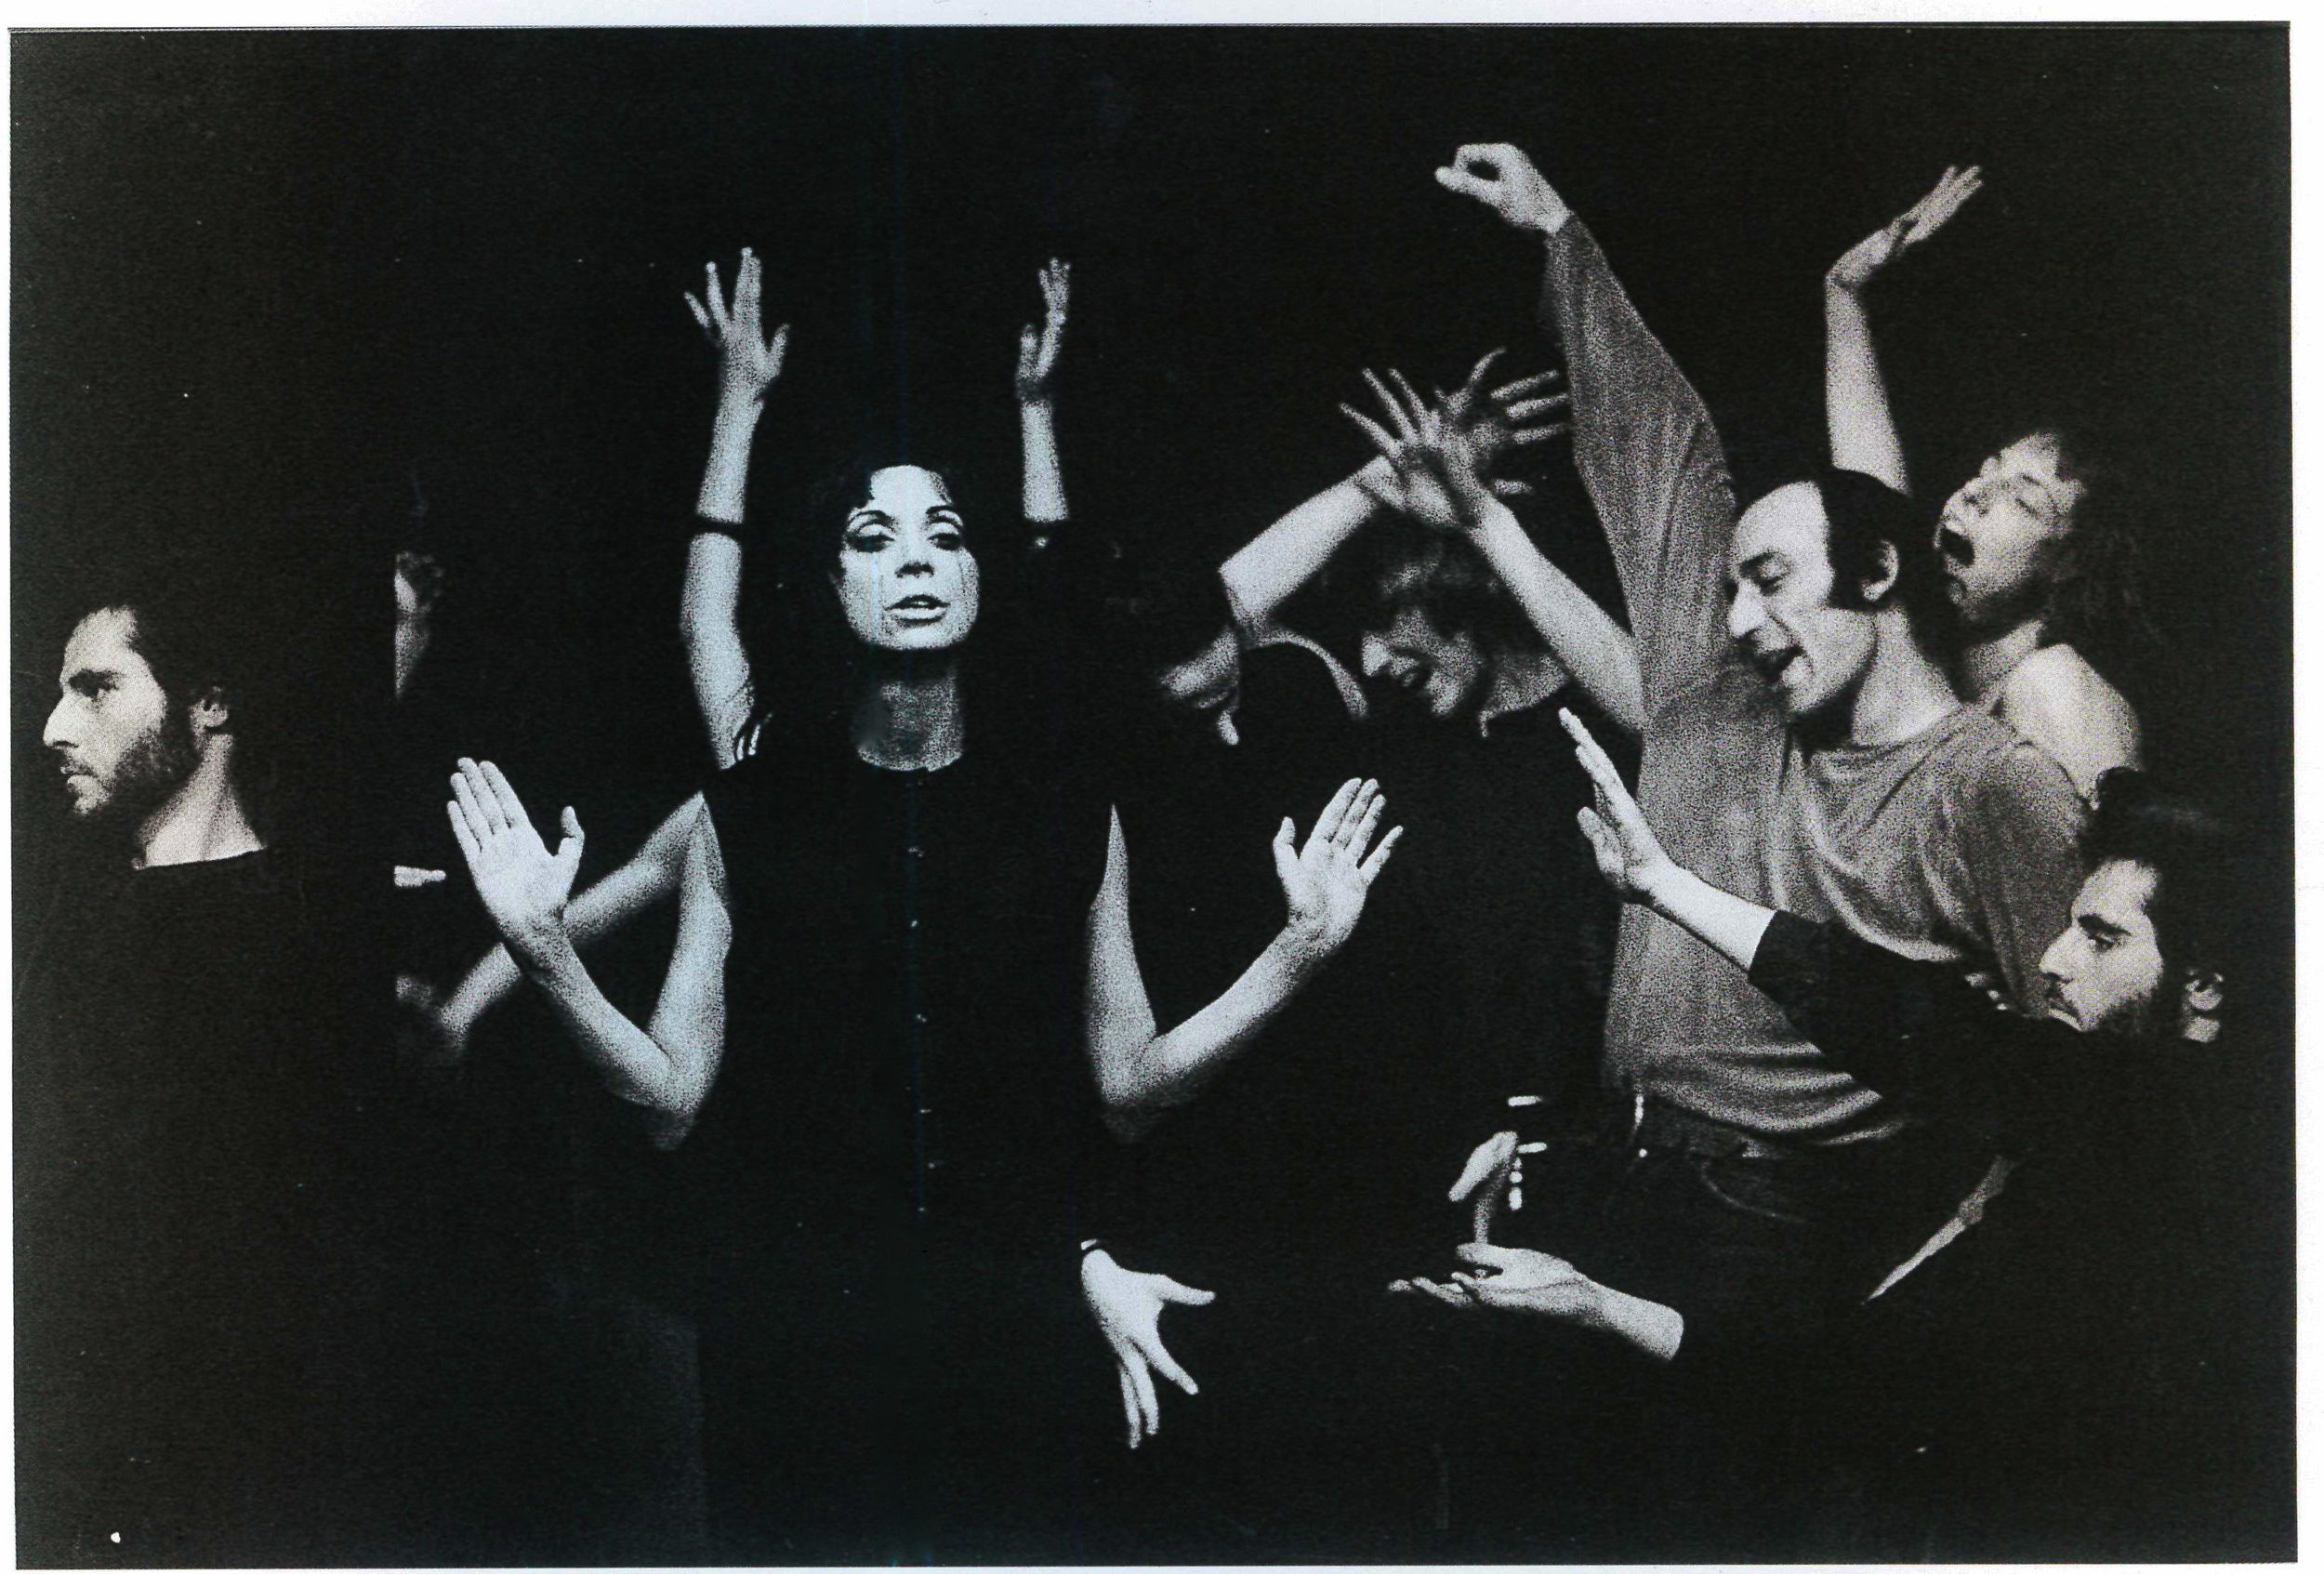   Living Theatre, scena di gruppo in  Antigone  al teatro Durini. Milano, 1967.  